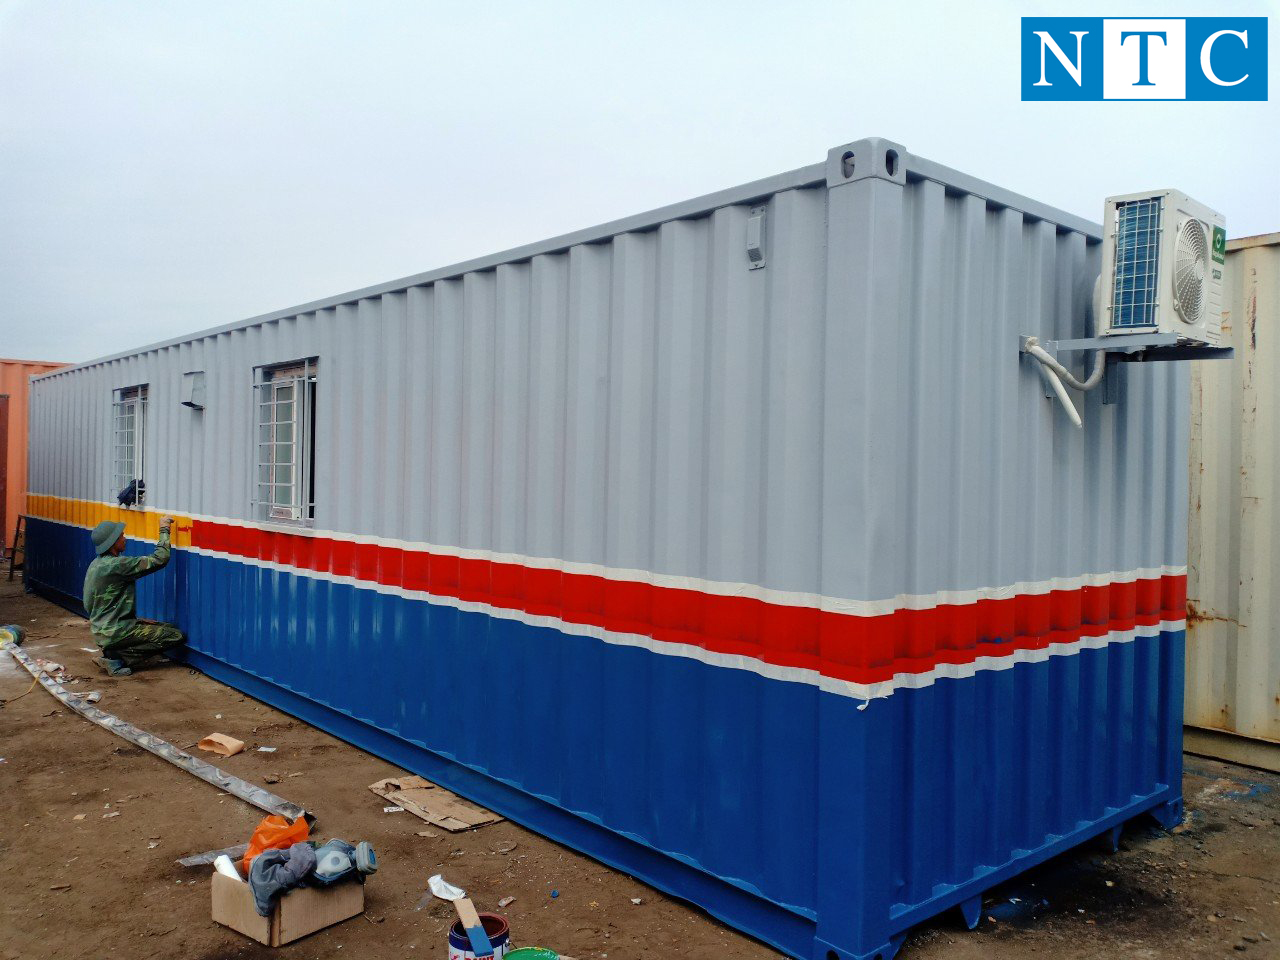 NTC Container - địa chỉ cho thuê container văn phòng uy tín tại Hà Nội 